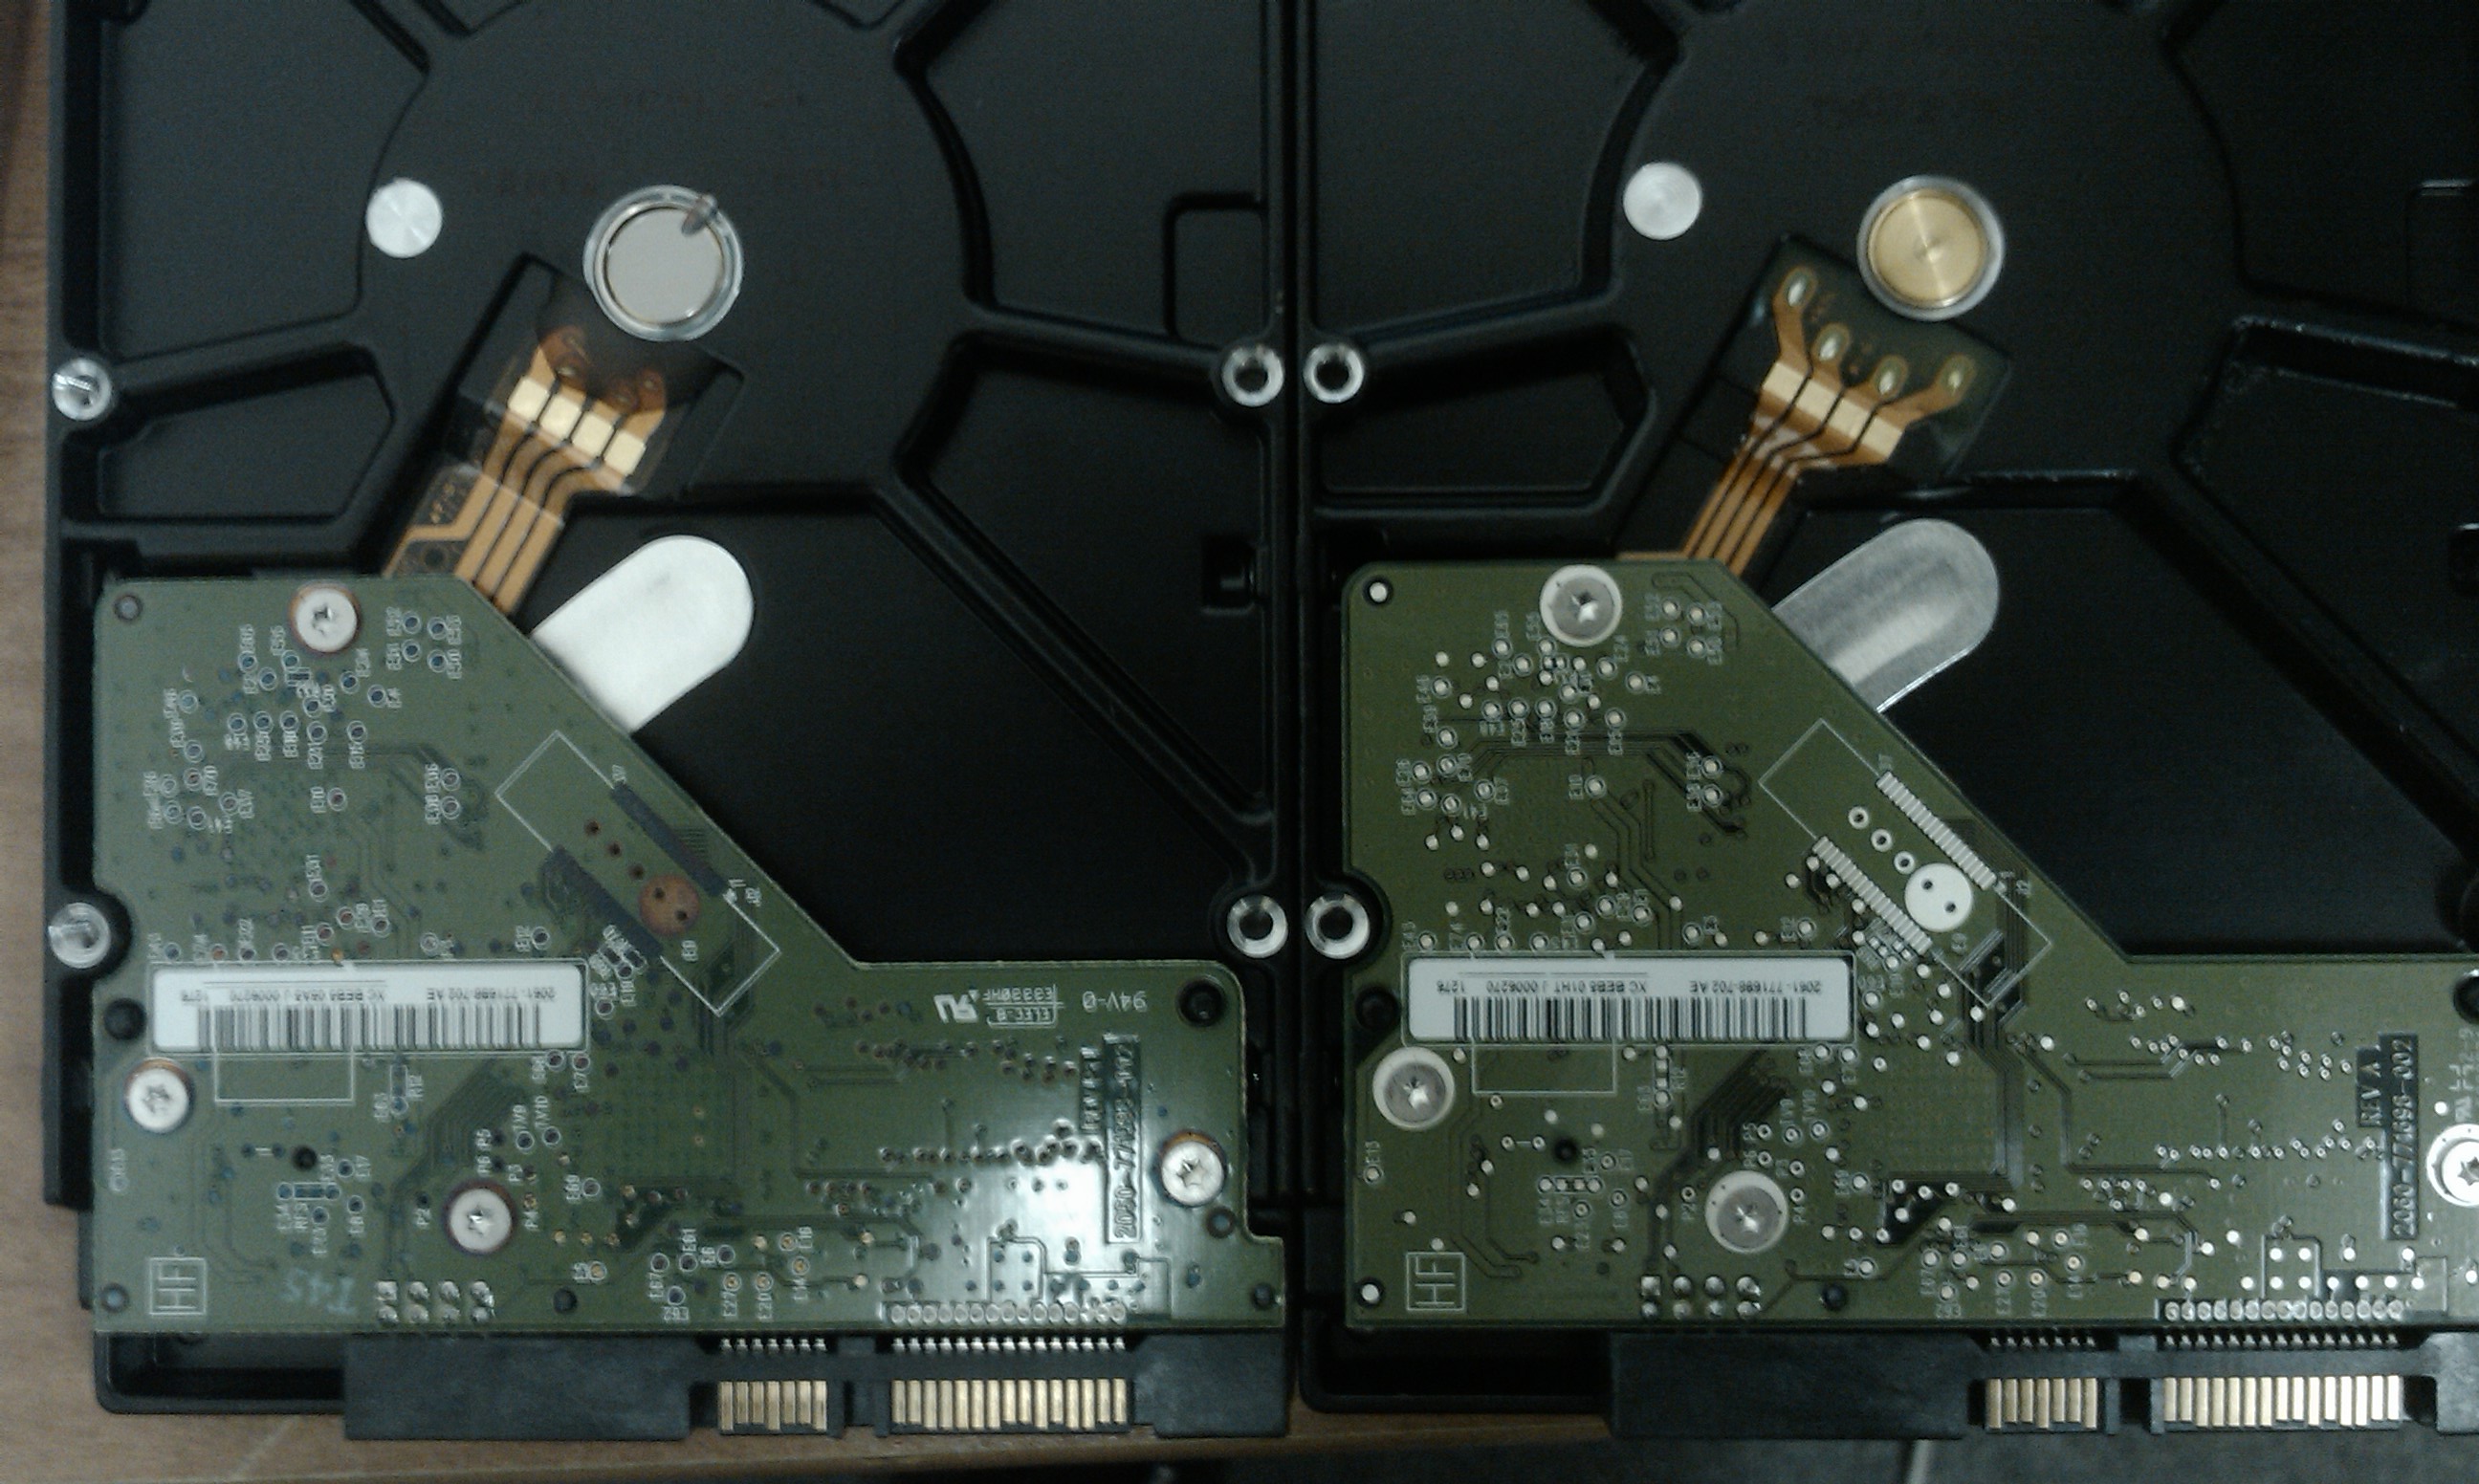 Vadný disk vlevo, nový disk vpravo - stejná série WD10EARS